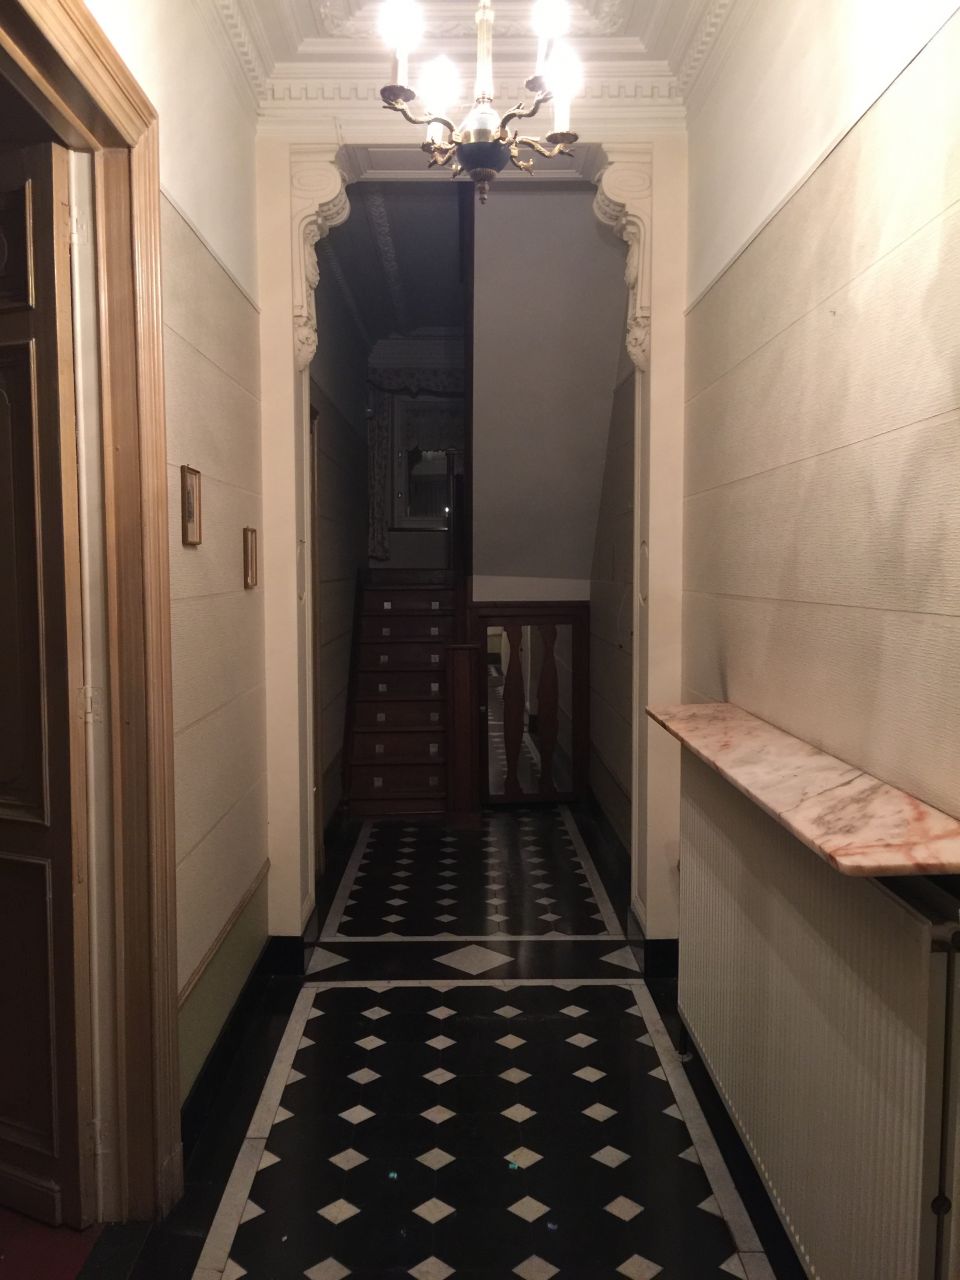 Hall d'entre d'origine avec moulures et sol en noir de mazy avec cabochons en marbre blanc.
<br />
Ce hall va tre conserv en l'tat mais restaur.